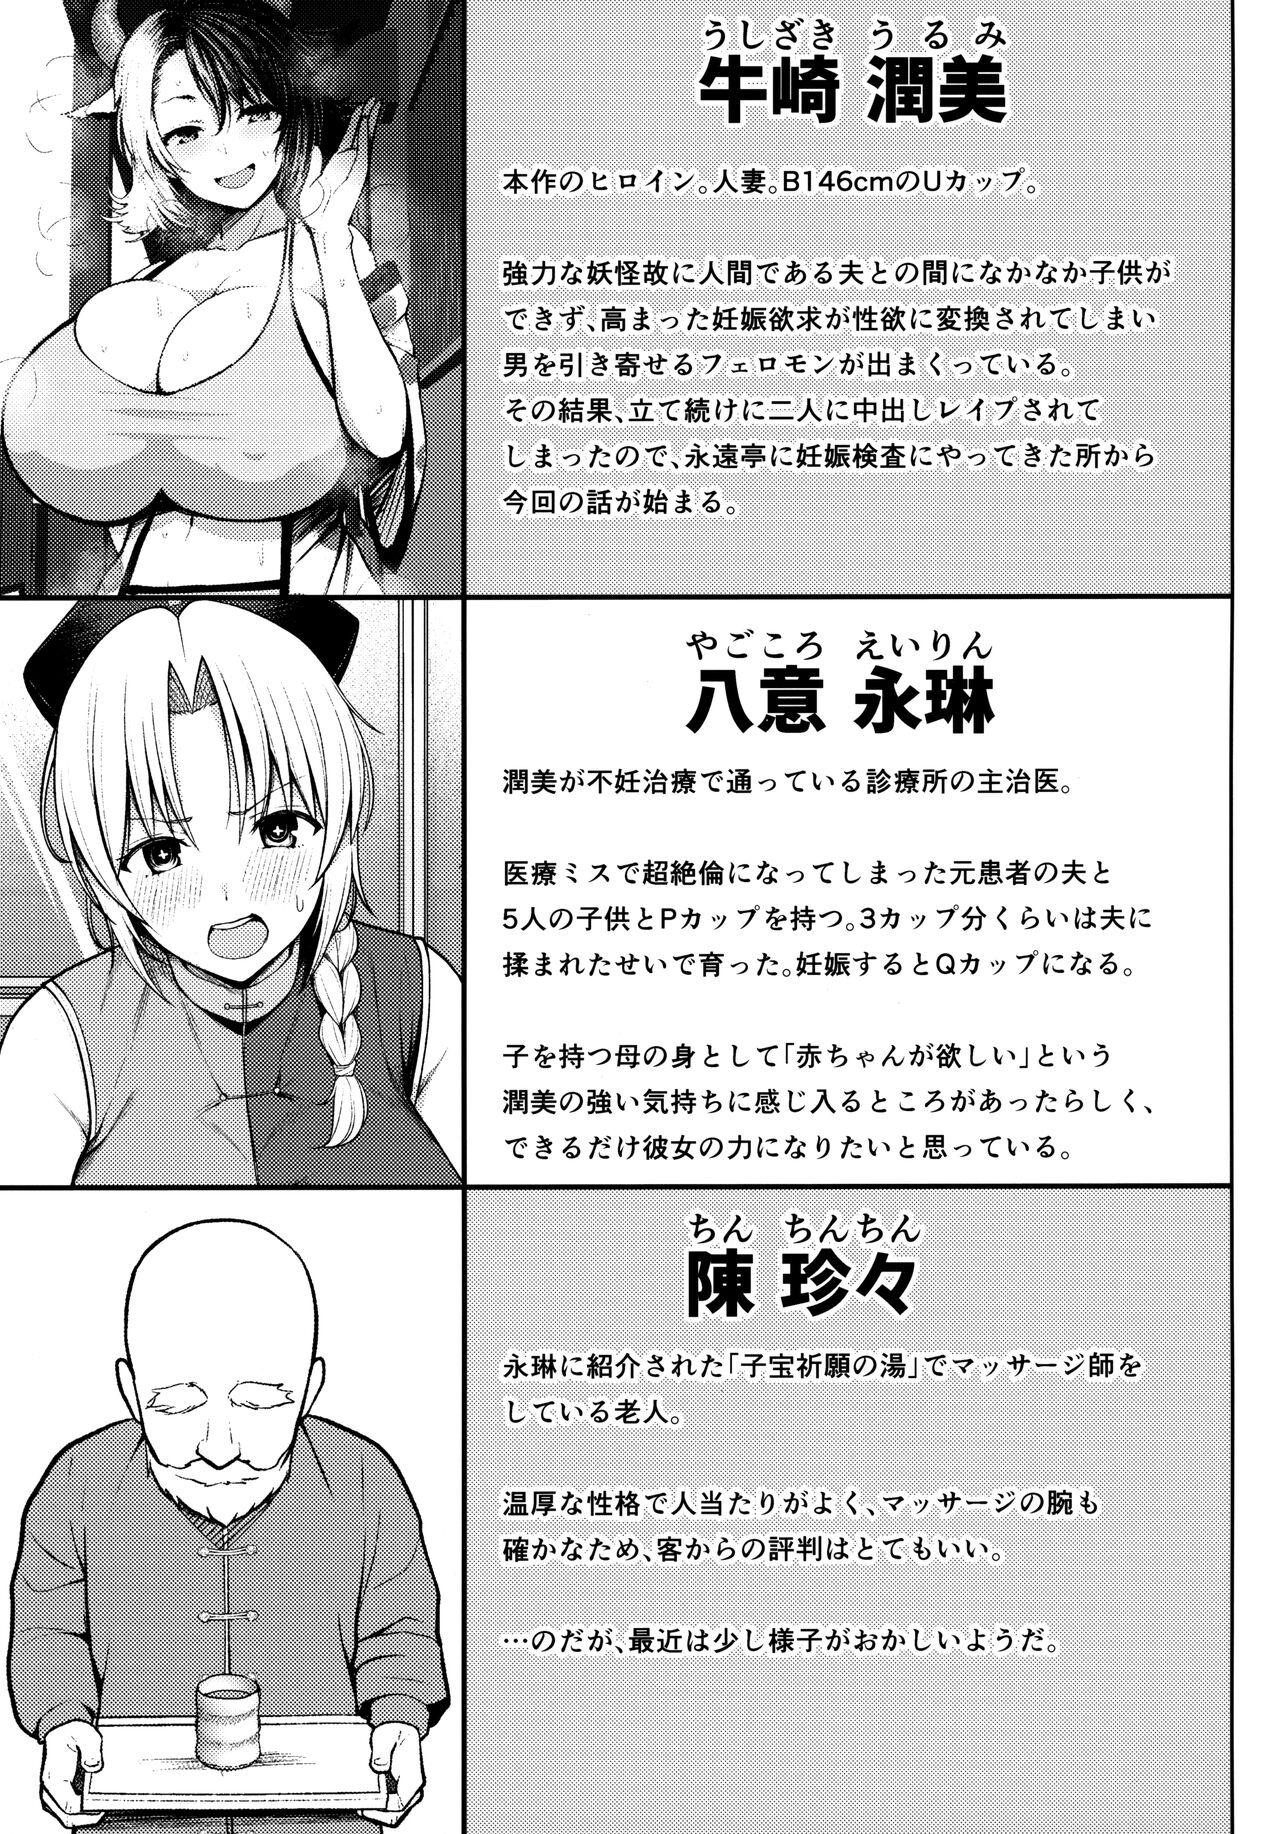 Satin Oku-san no Oppai ga Dekasugiru no ga Warui! 4 - Touhou project Real Orgasms - Page 2